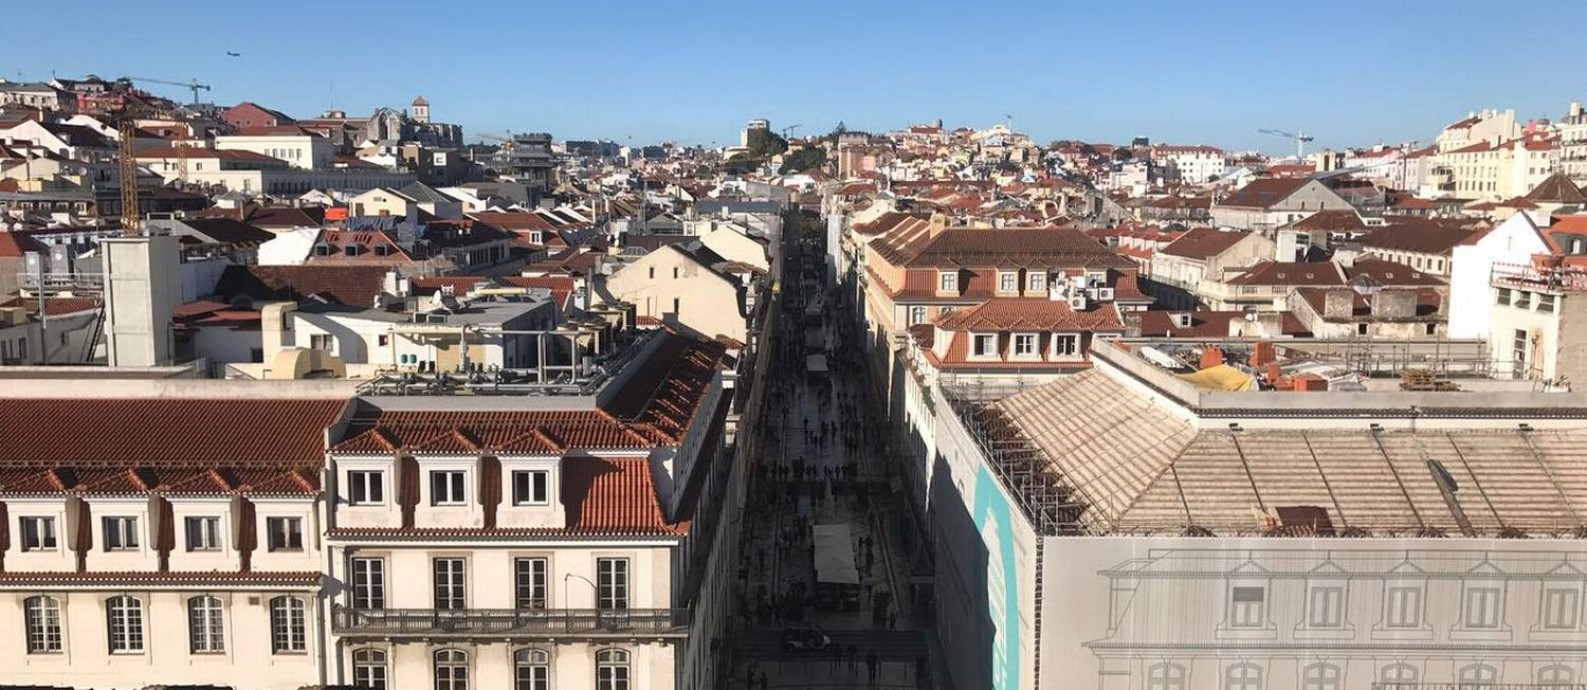 Com alta procura por imóveis, Portugal tem milhares de novas imobiliárias Foto: Sany Dallarosa